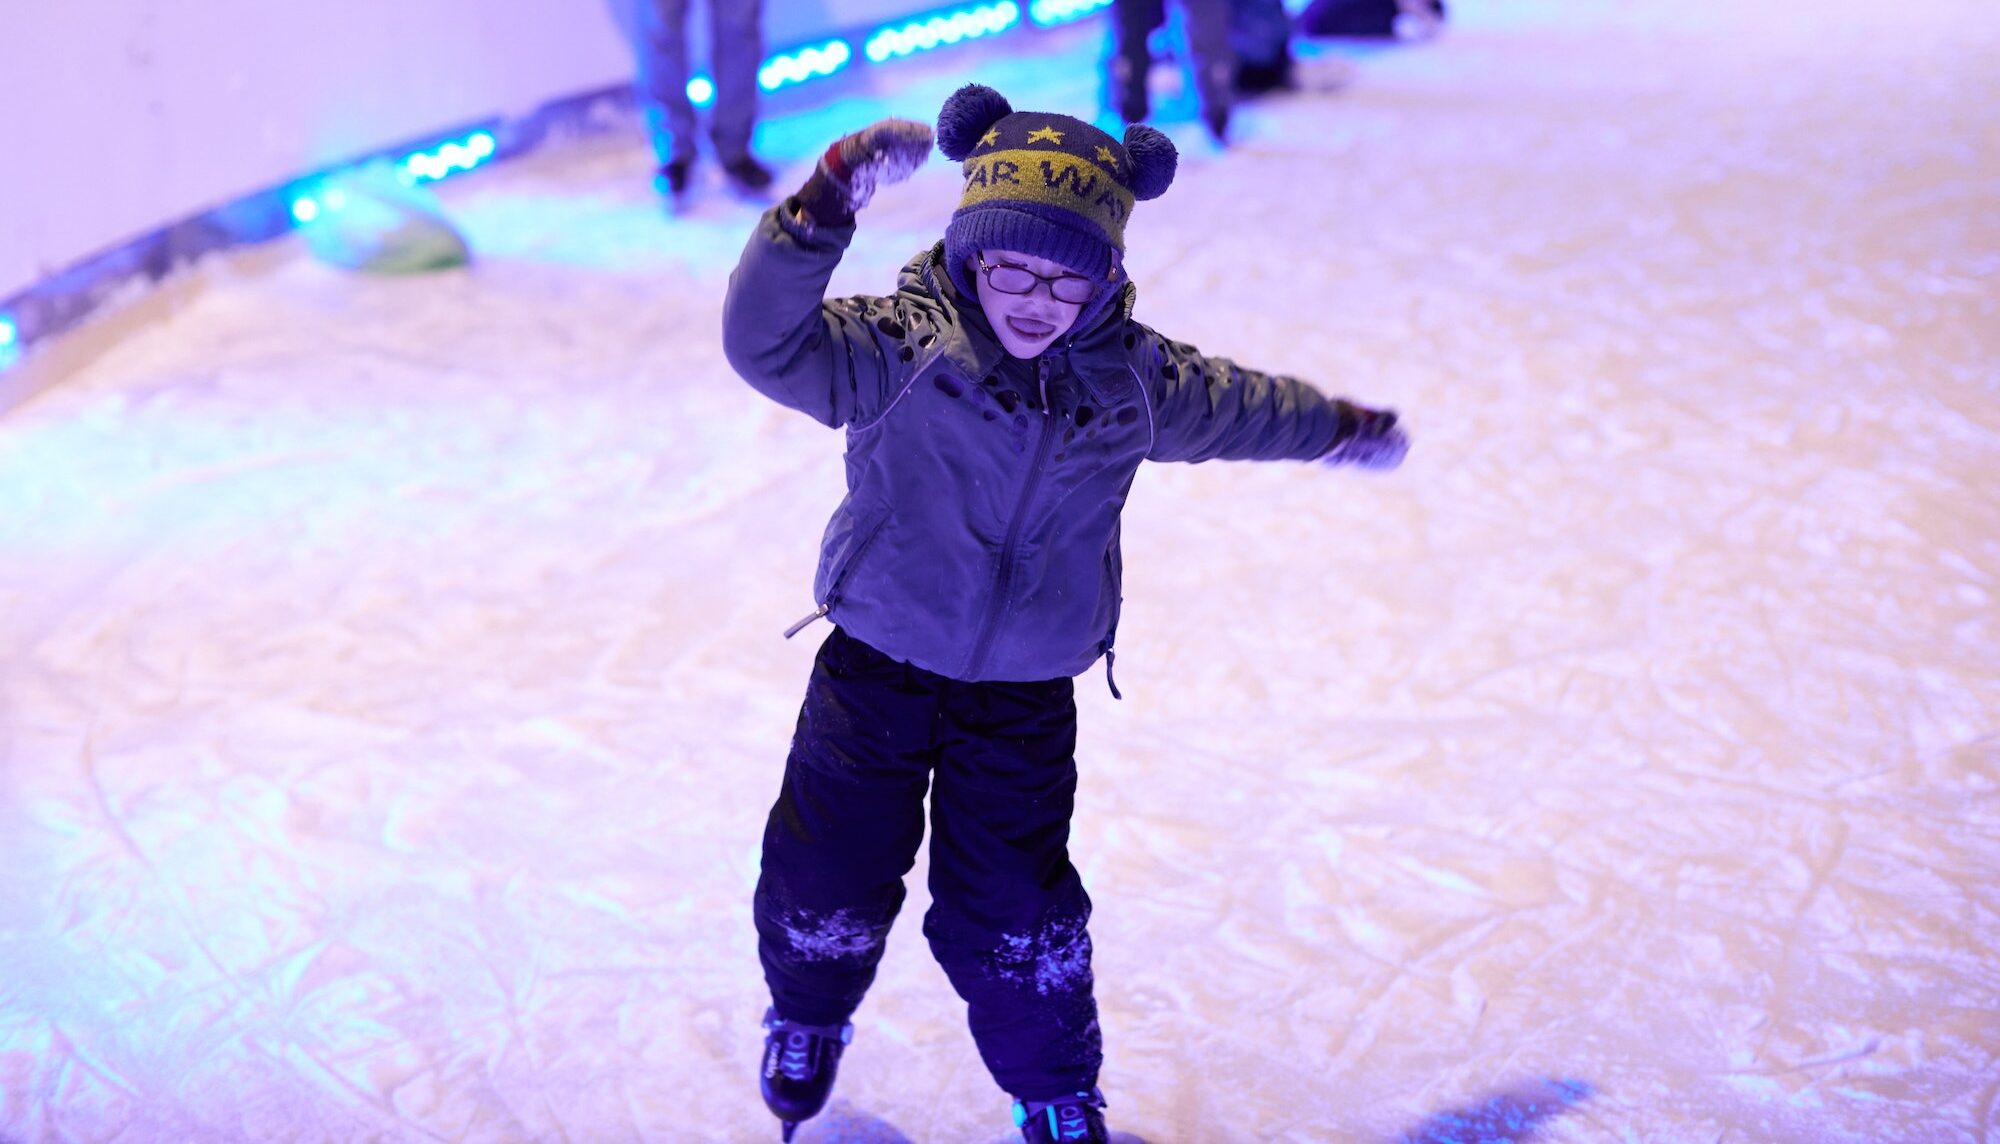 Kind beim Schlittschuhlaufen auf der Eisbahn